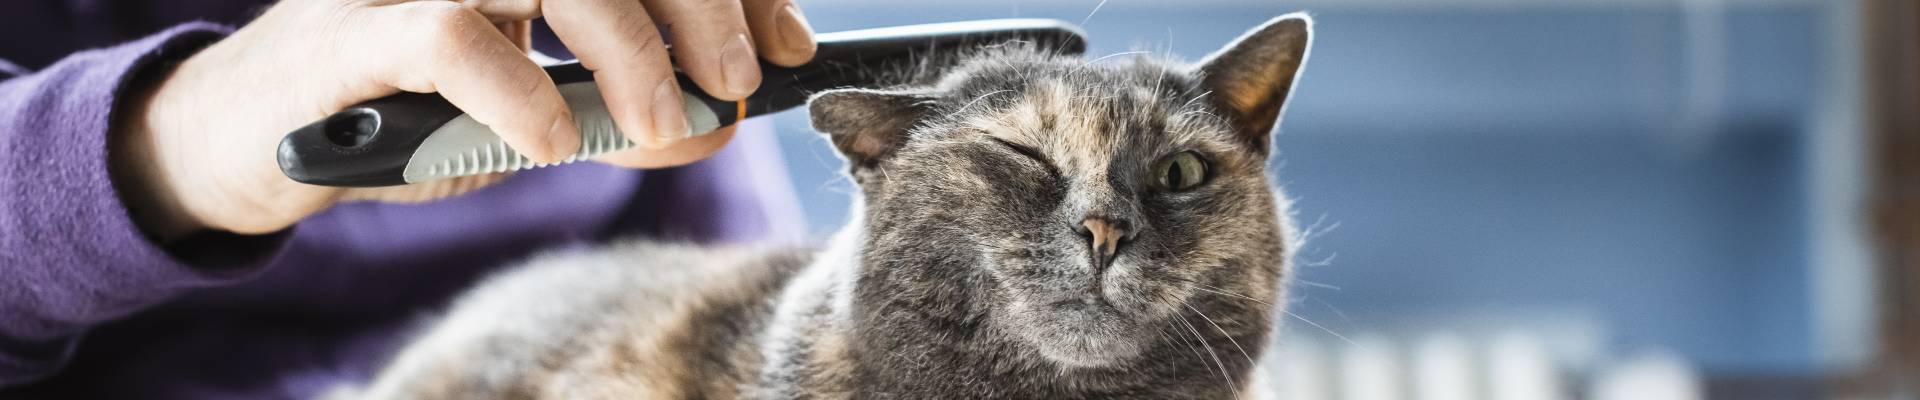 Un gato carey es acicalado con un peine para pulgas